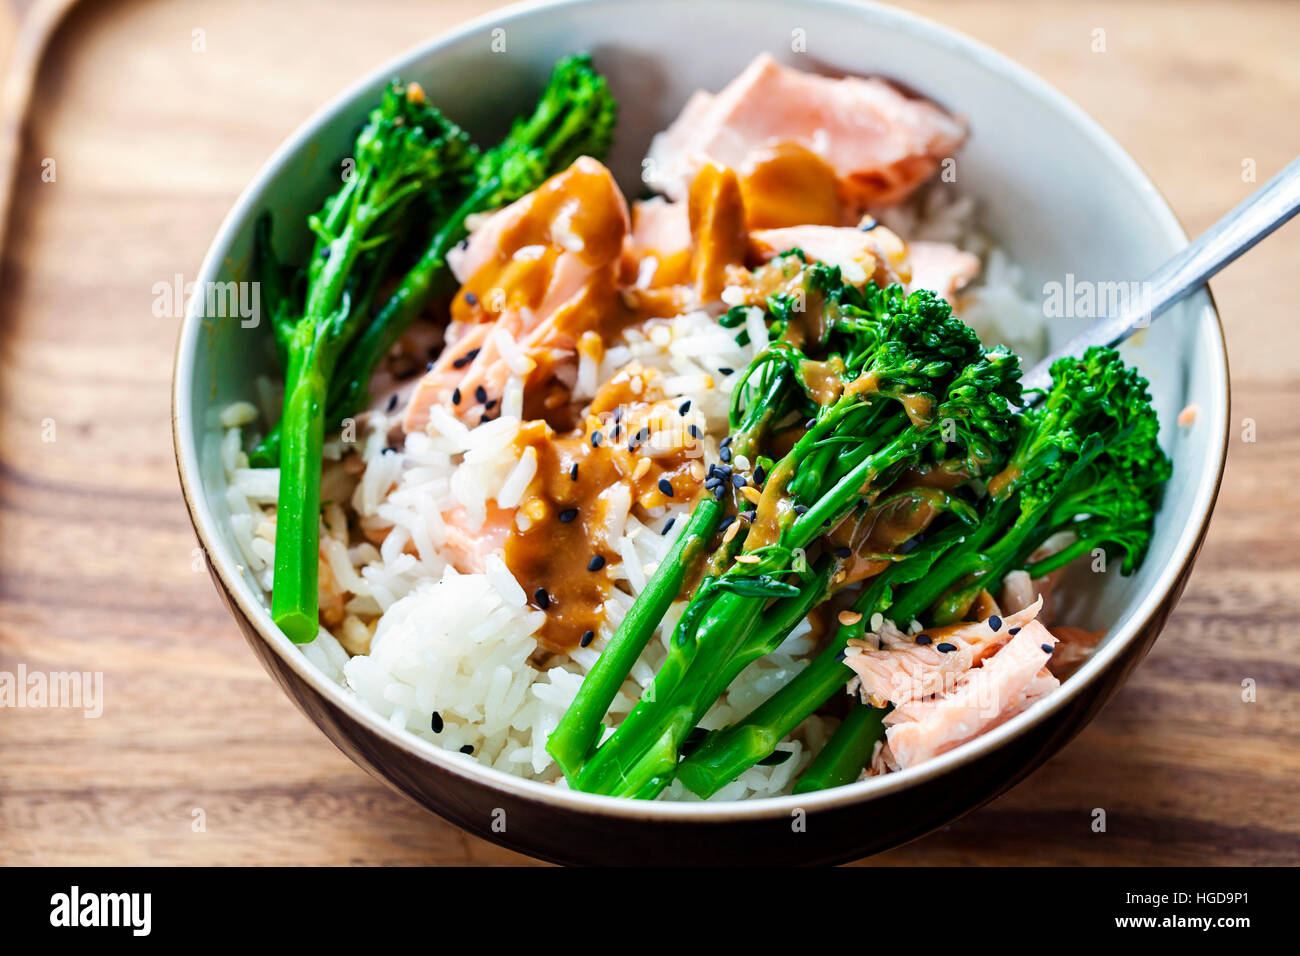 Salmone bollito con riso, broccoli e salsa di miso Foto Stock